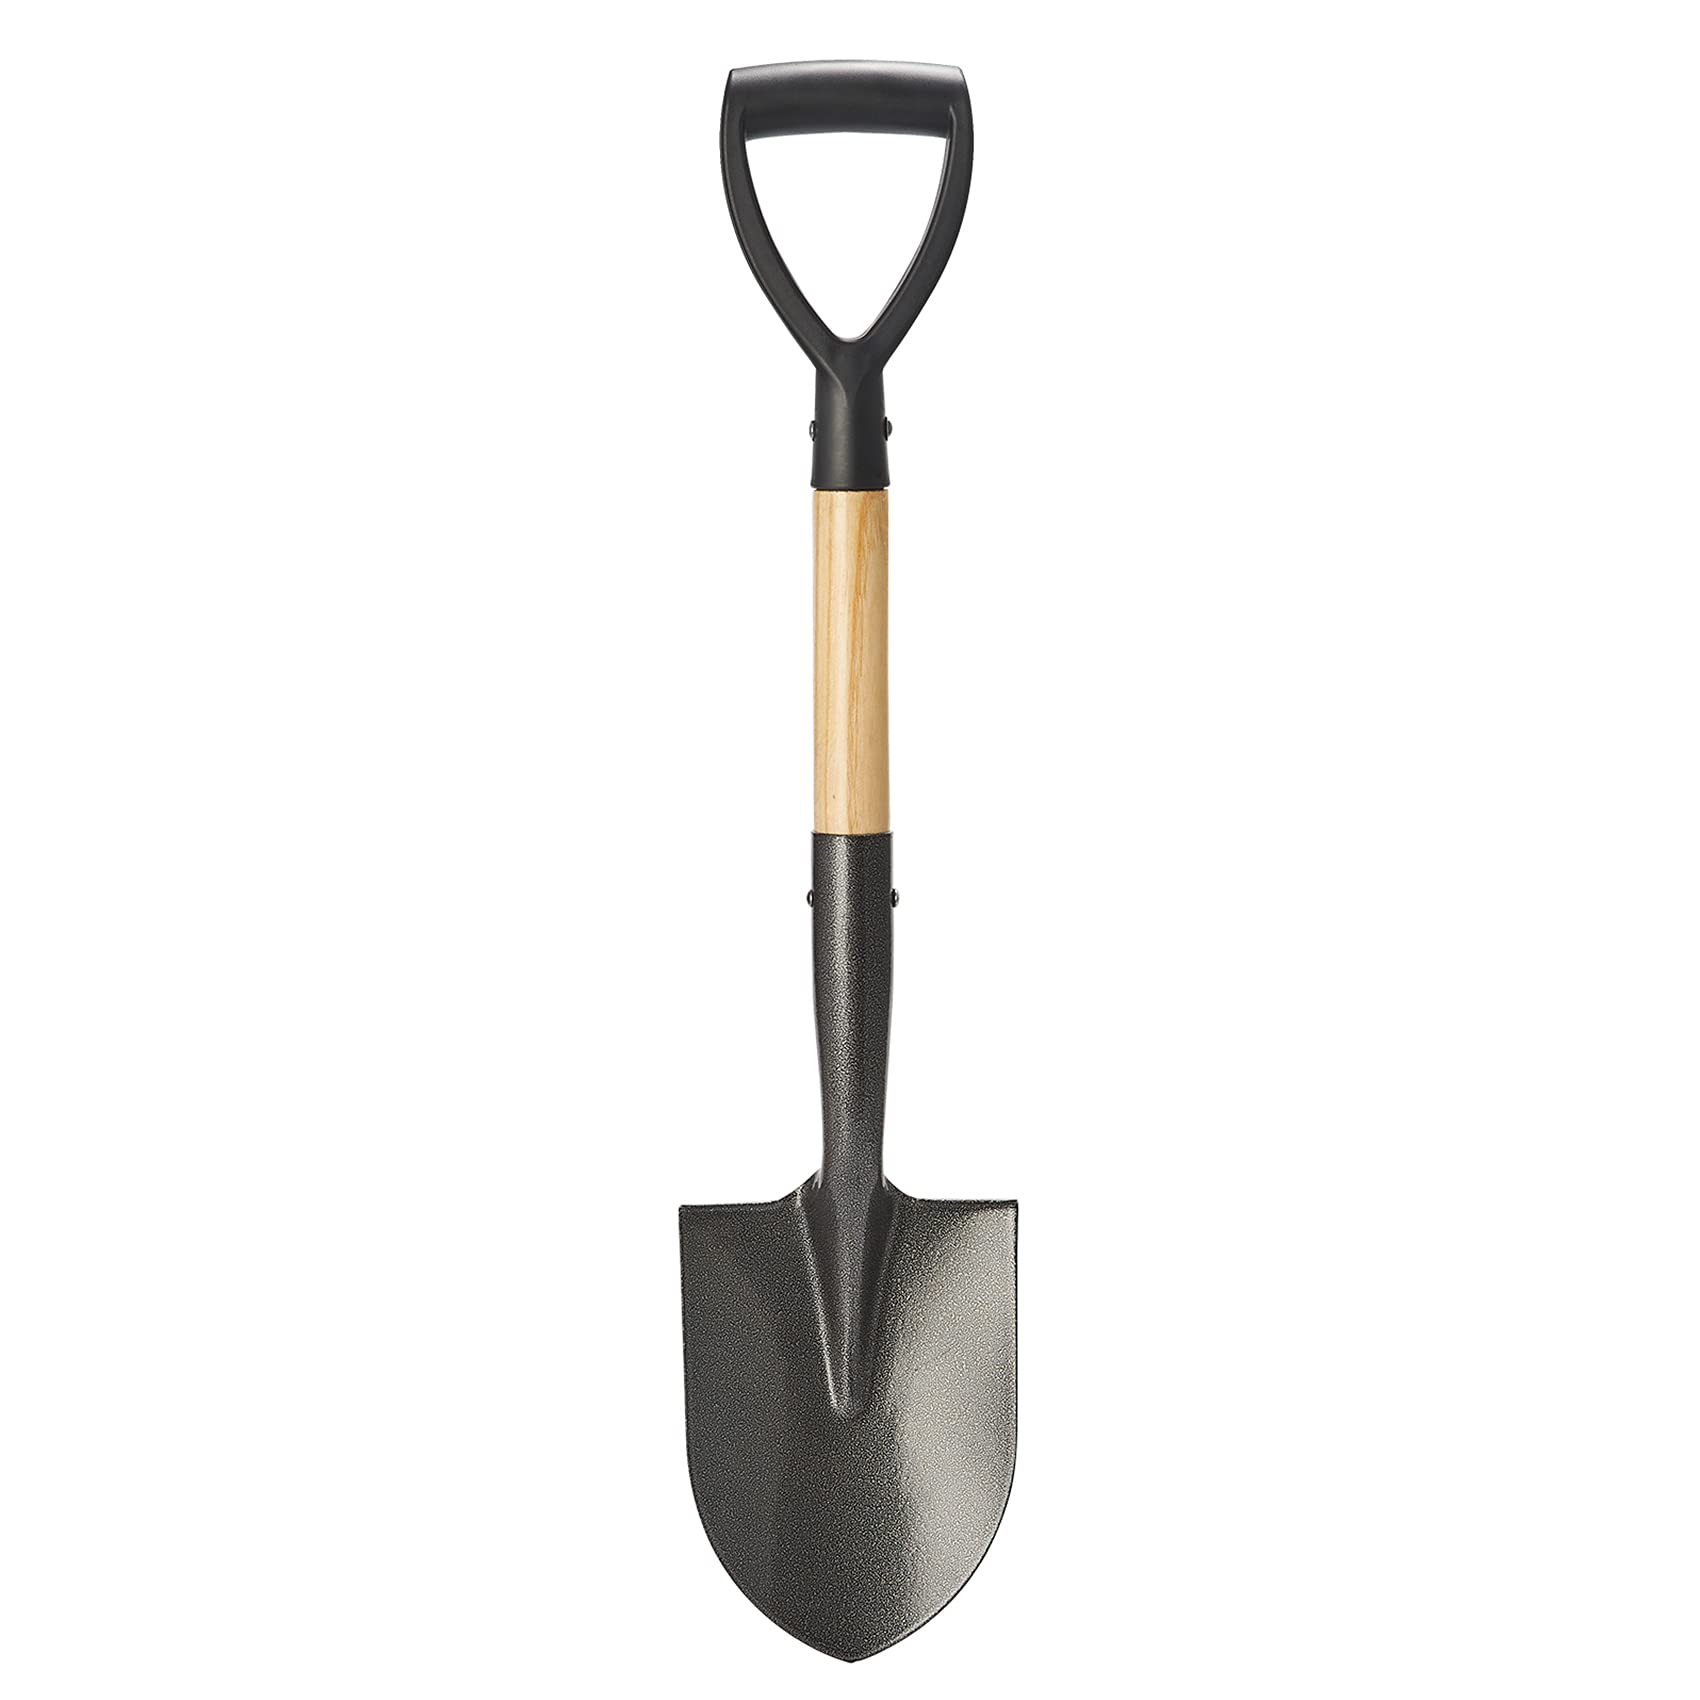 VNIMTI Shovel for Digging